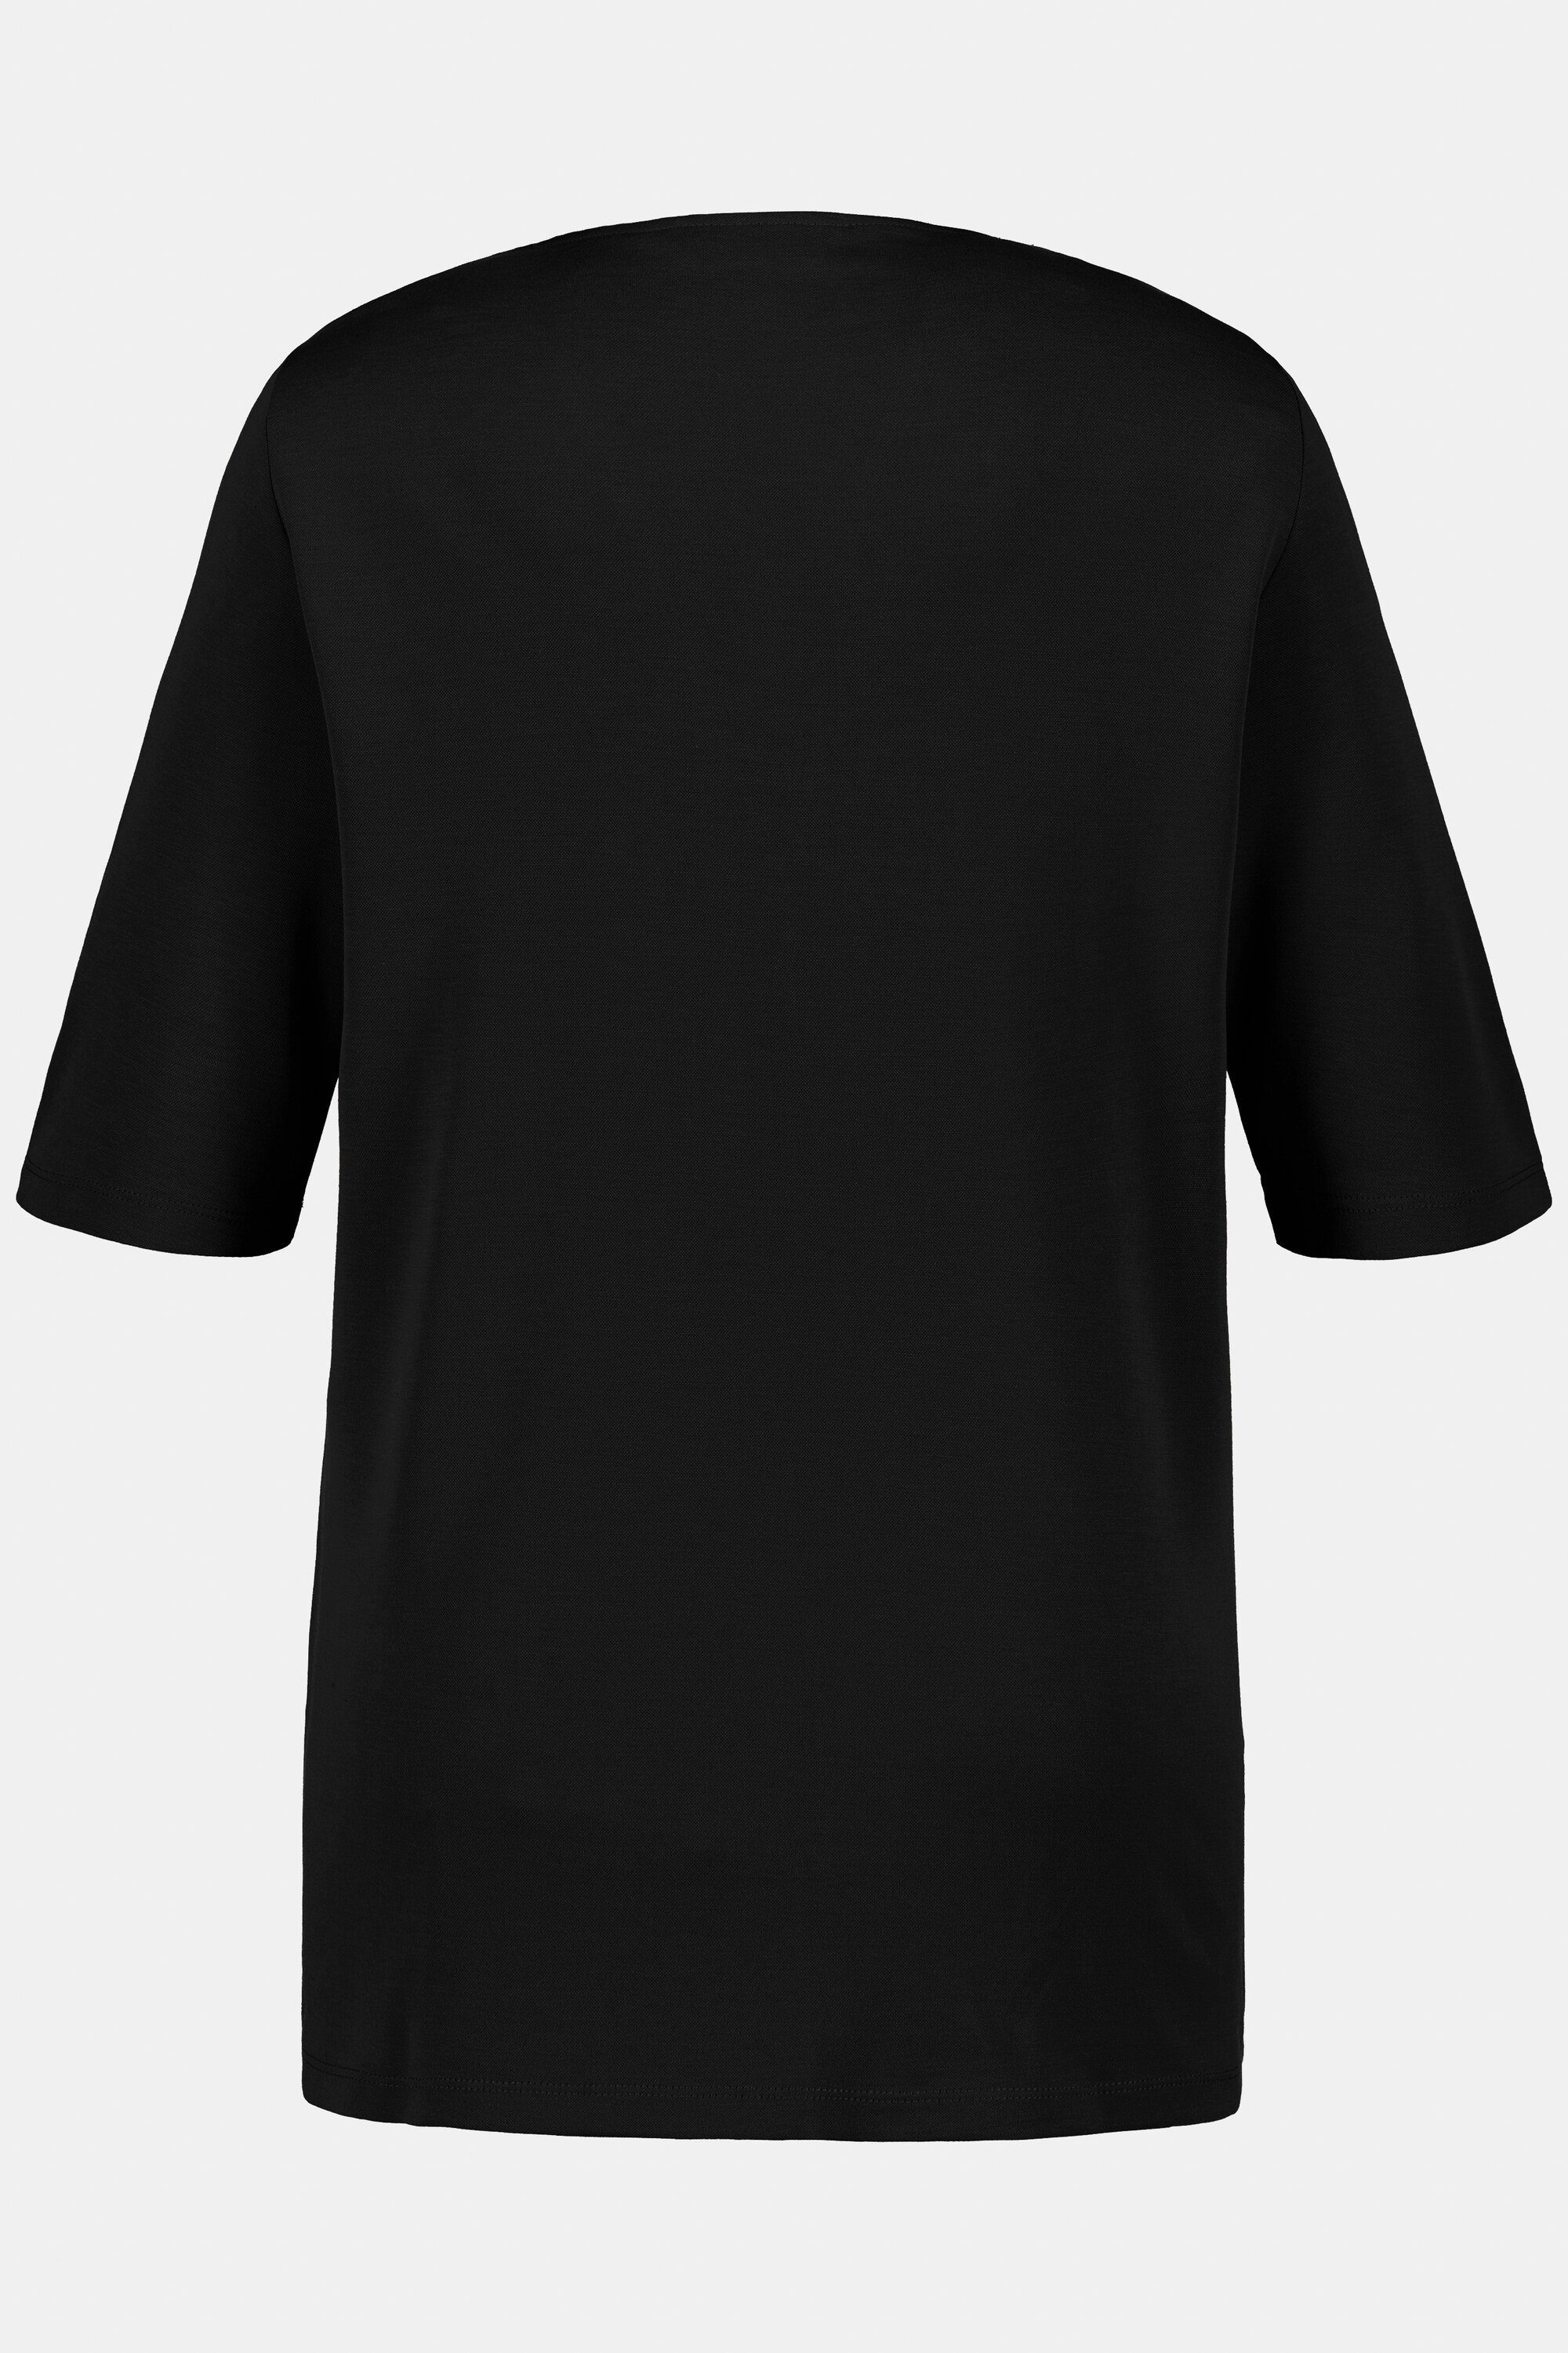 V-Ausschnitt T-Shirt Rundhalsshirt schwarz Popken Drapierung Ulla Halbarm Classic